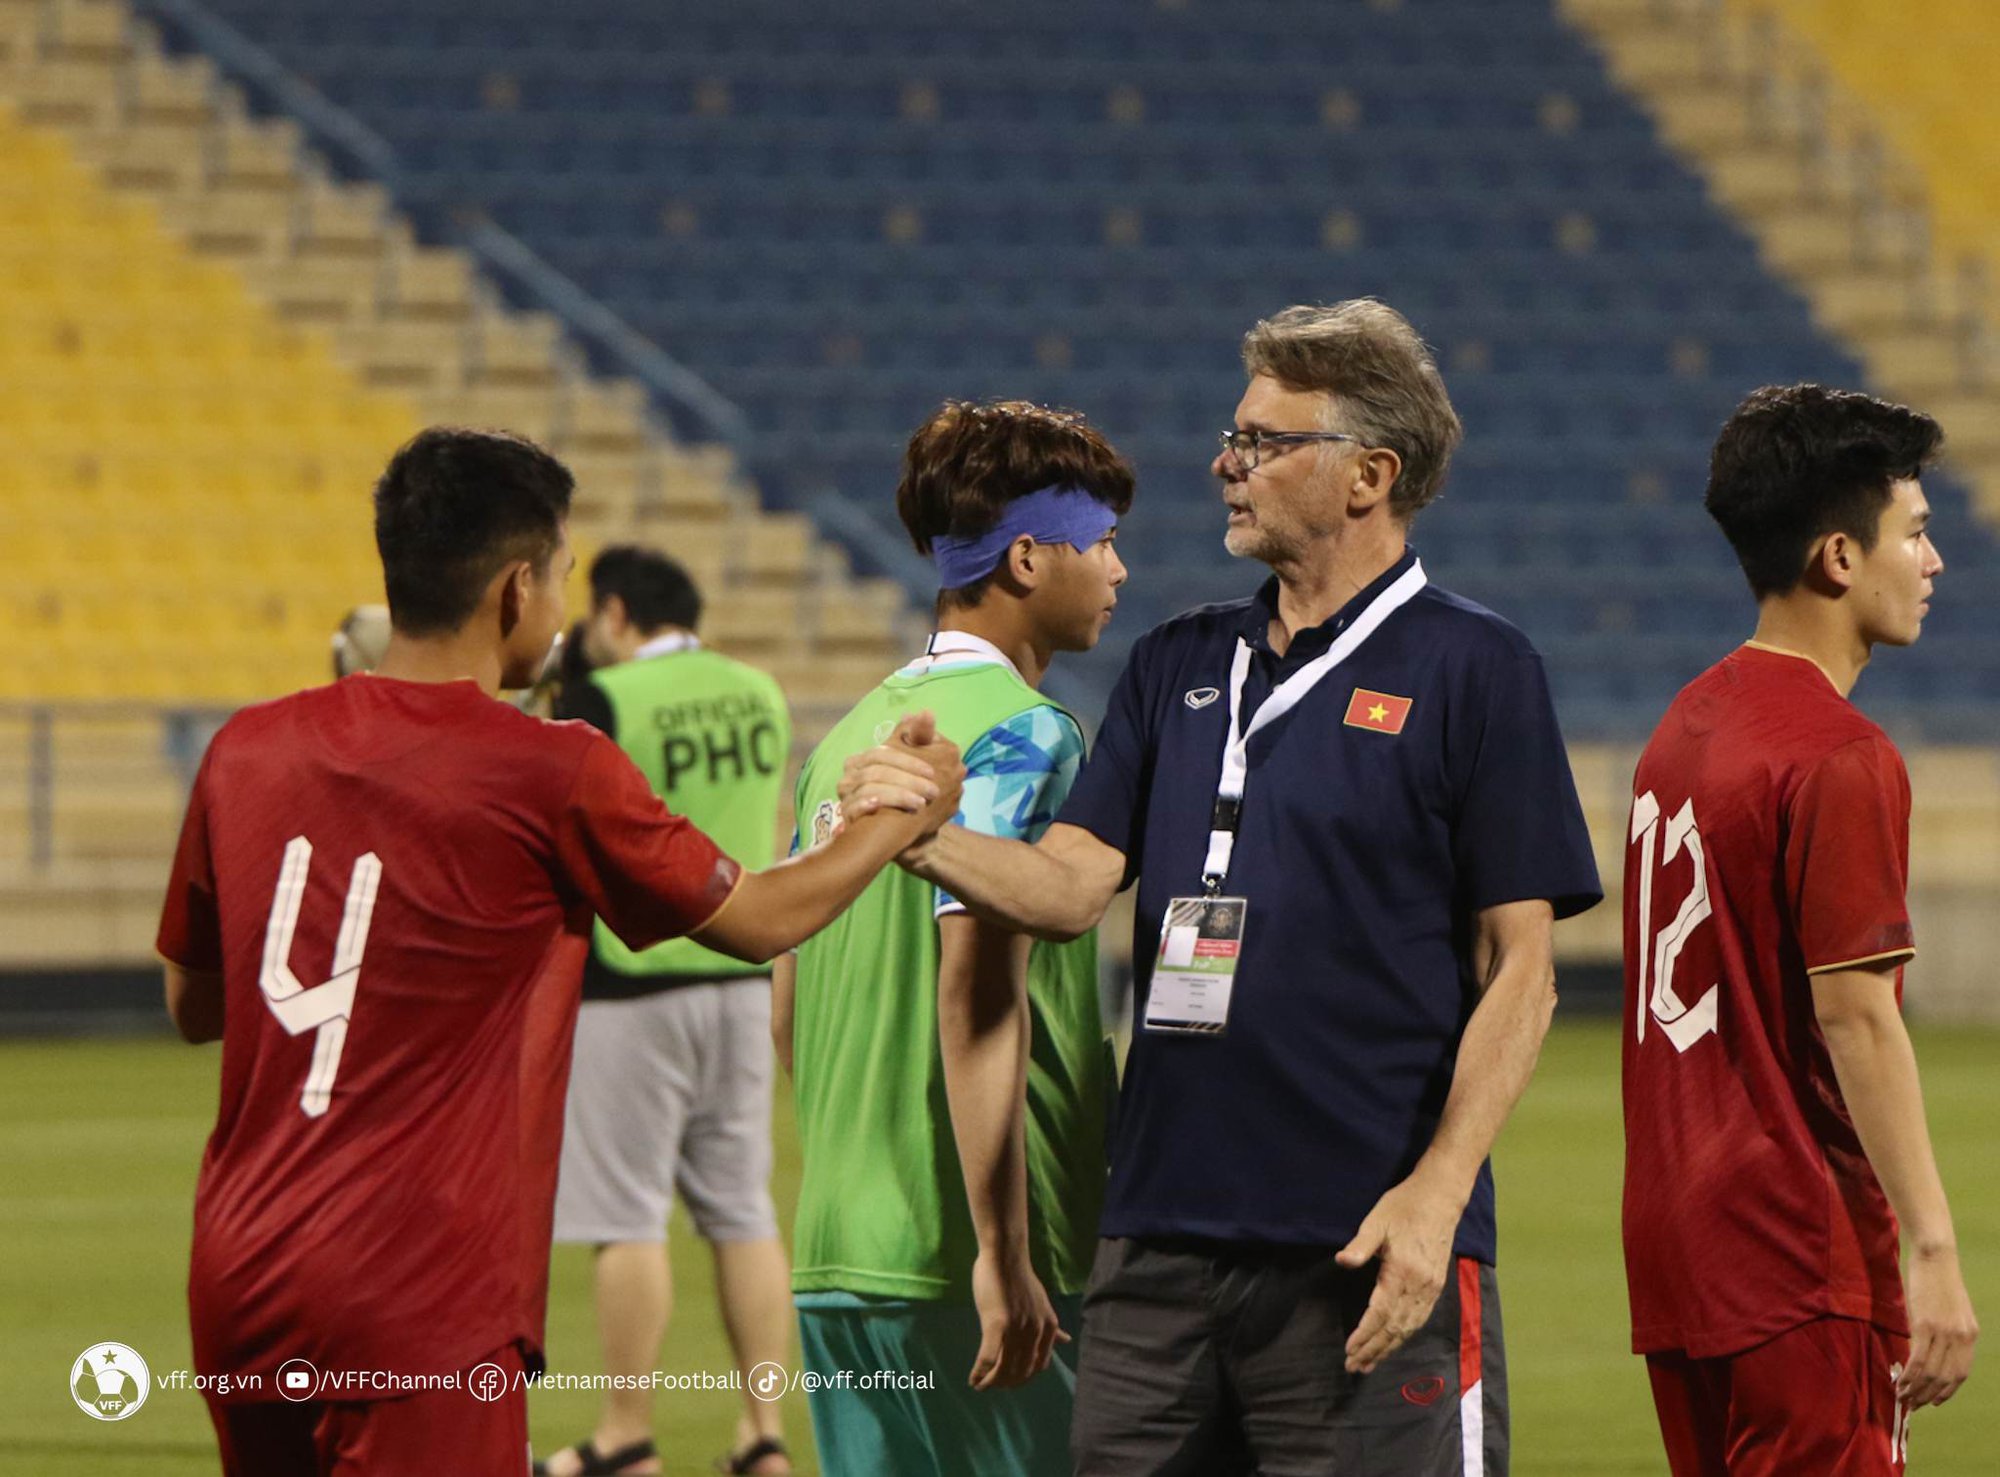 Vì mục tiêu World Cup 2026, U20 Việt Nam nhận trọng trách đặc biệt - Ảnh 1.